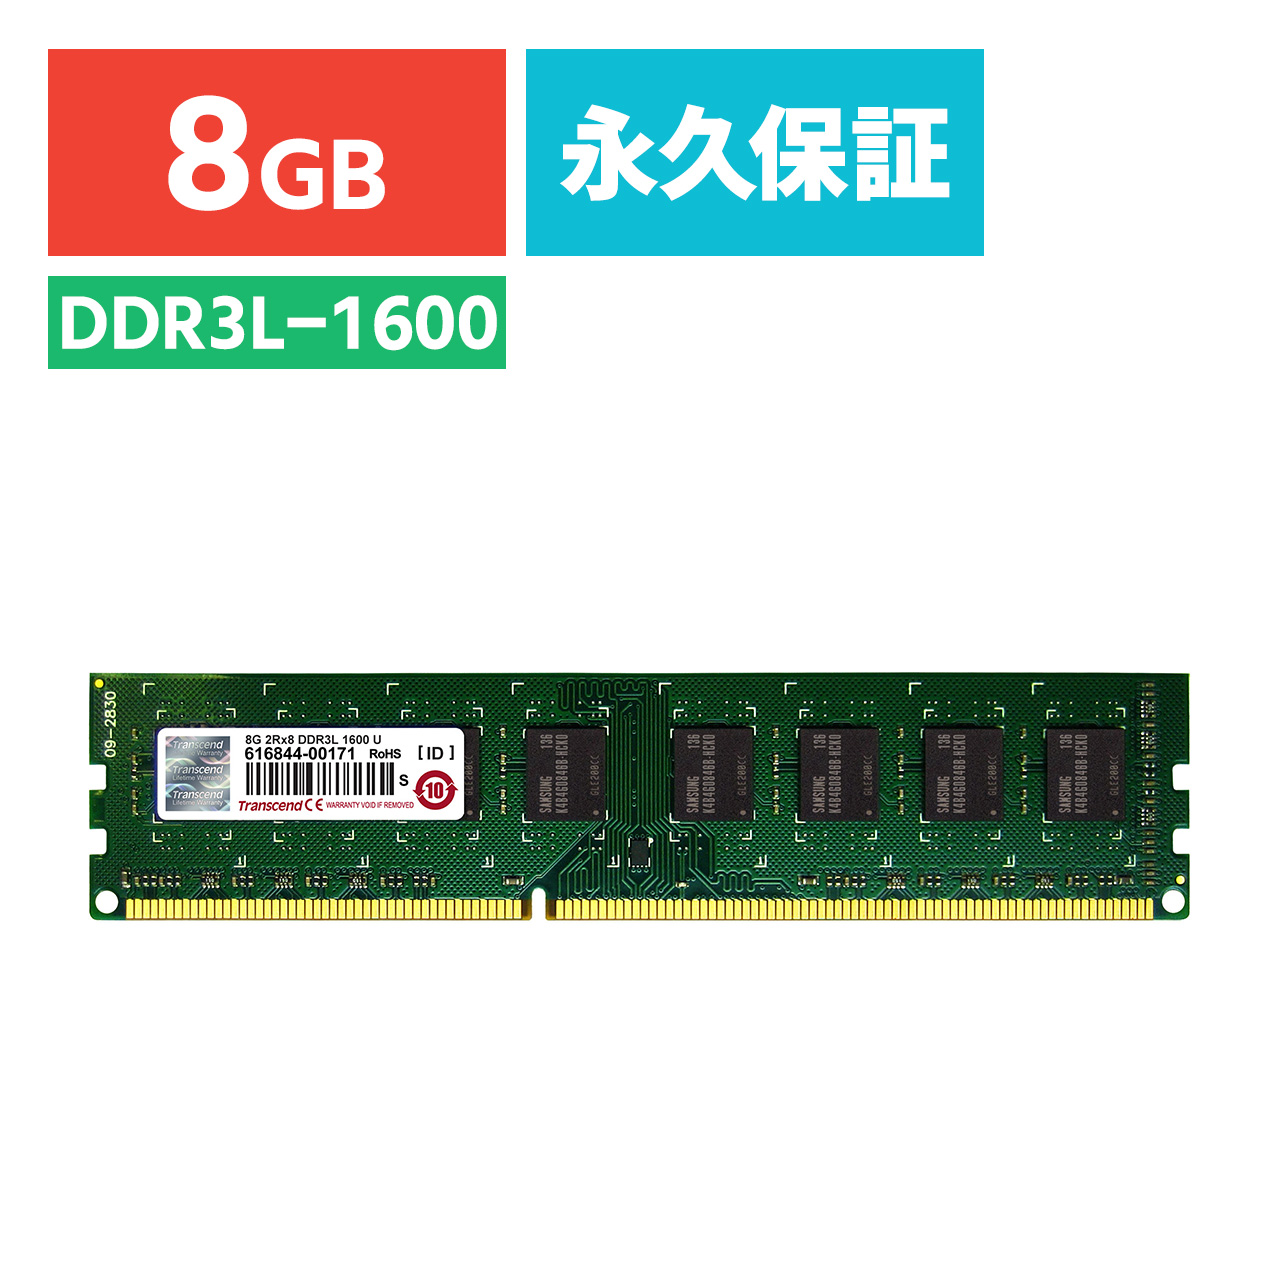 8GB 2R×8 PC3L-12800